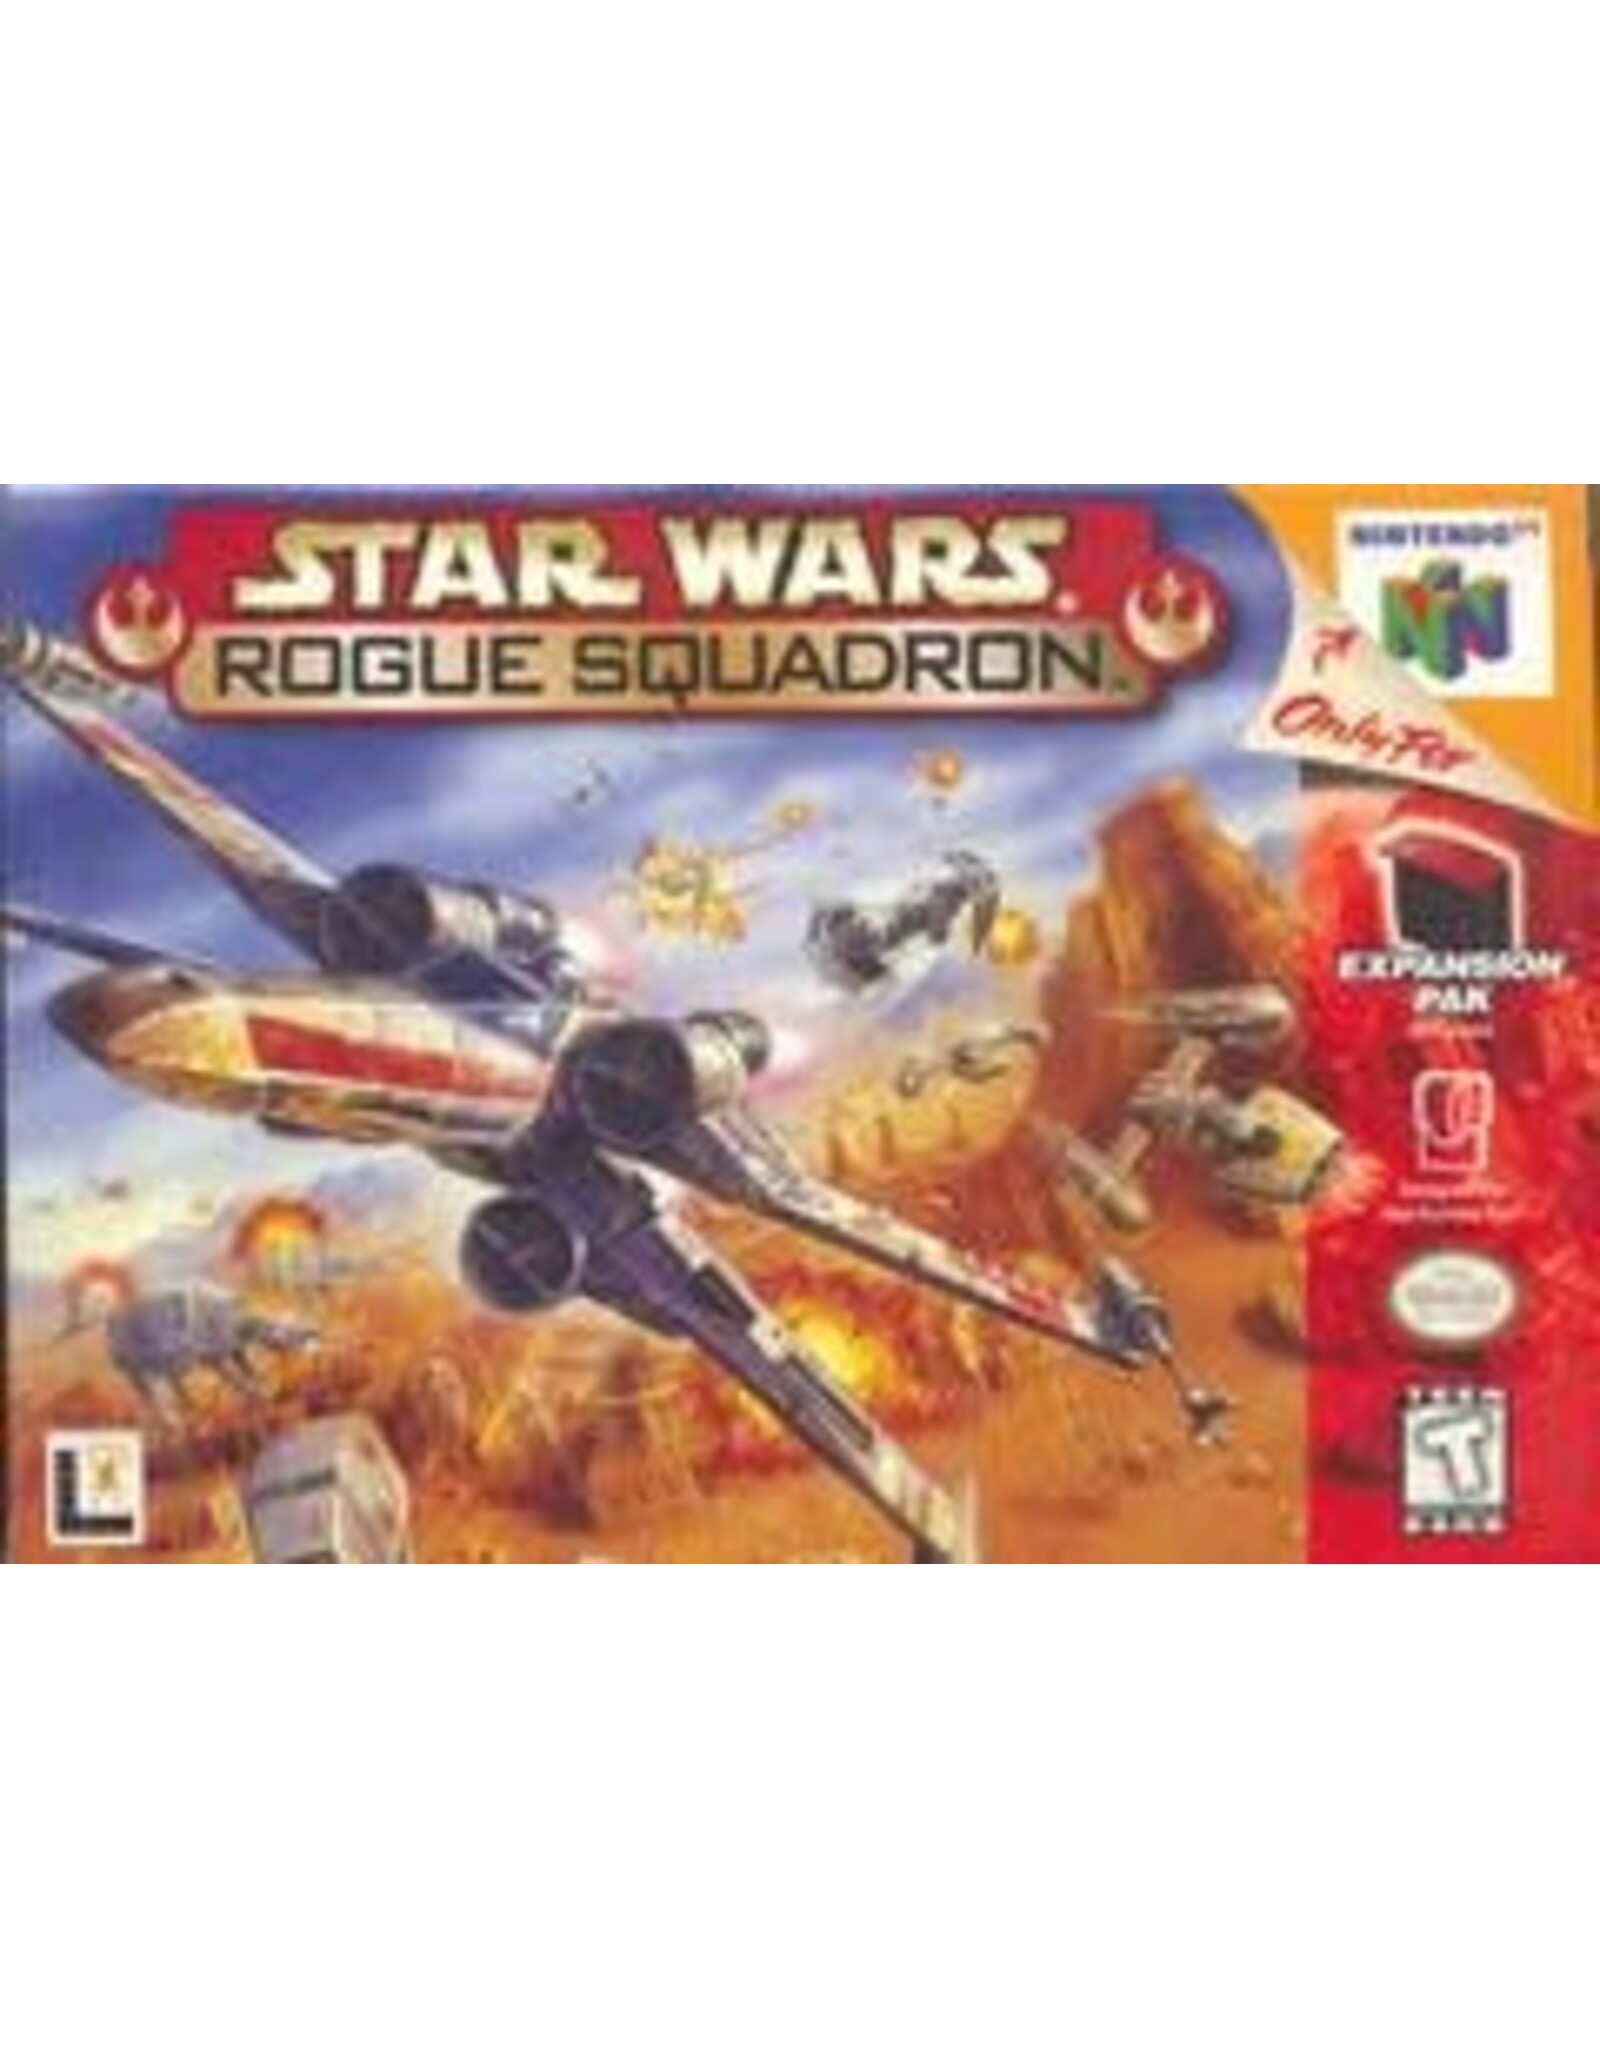 Nintendo 64 Star Wars Rogue Squadron (CiB, Damaged Box)